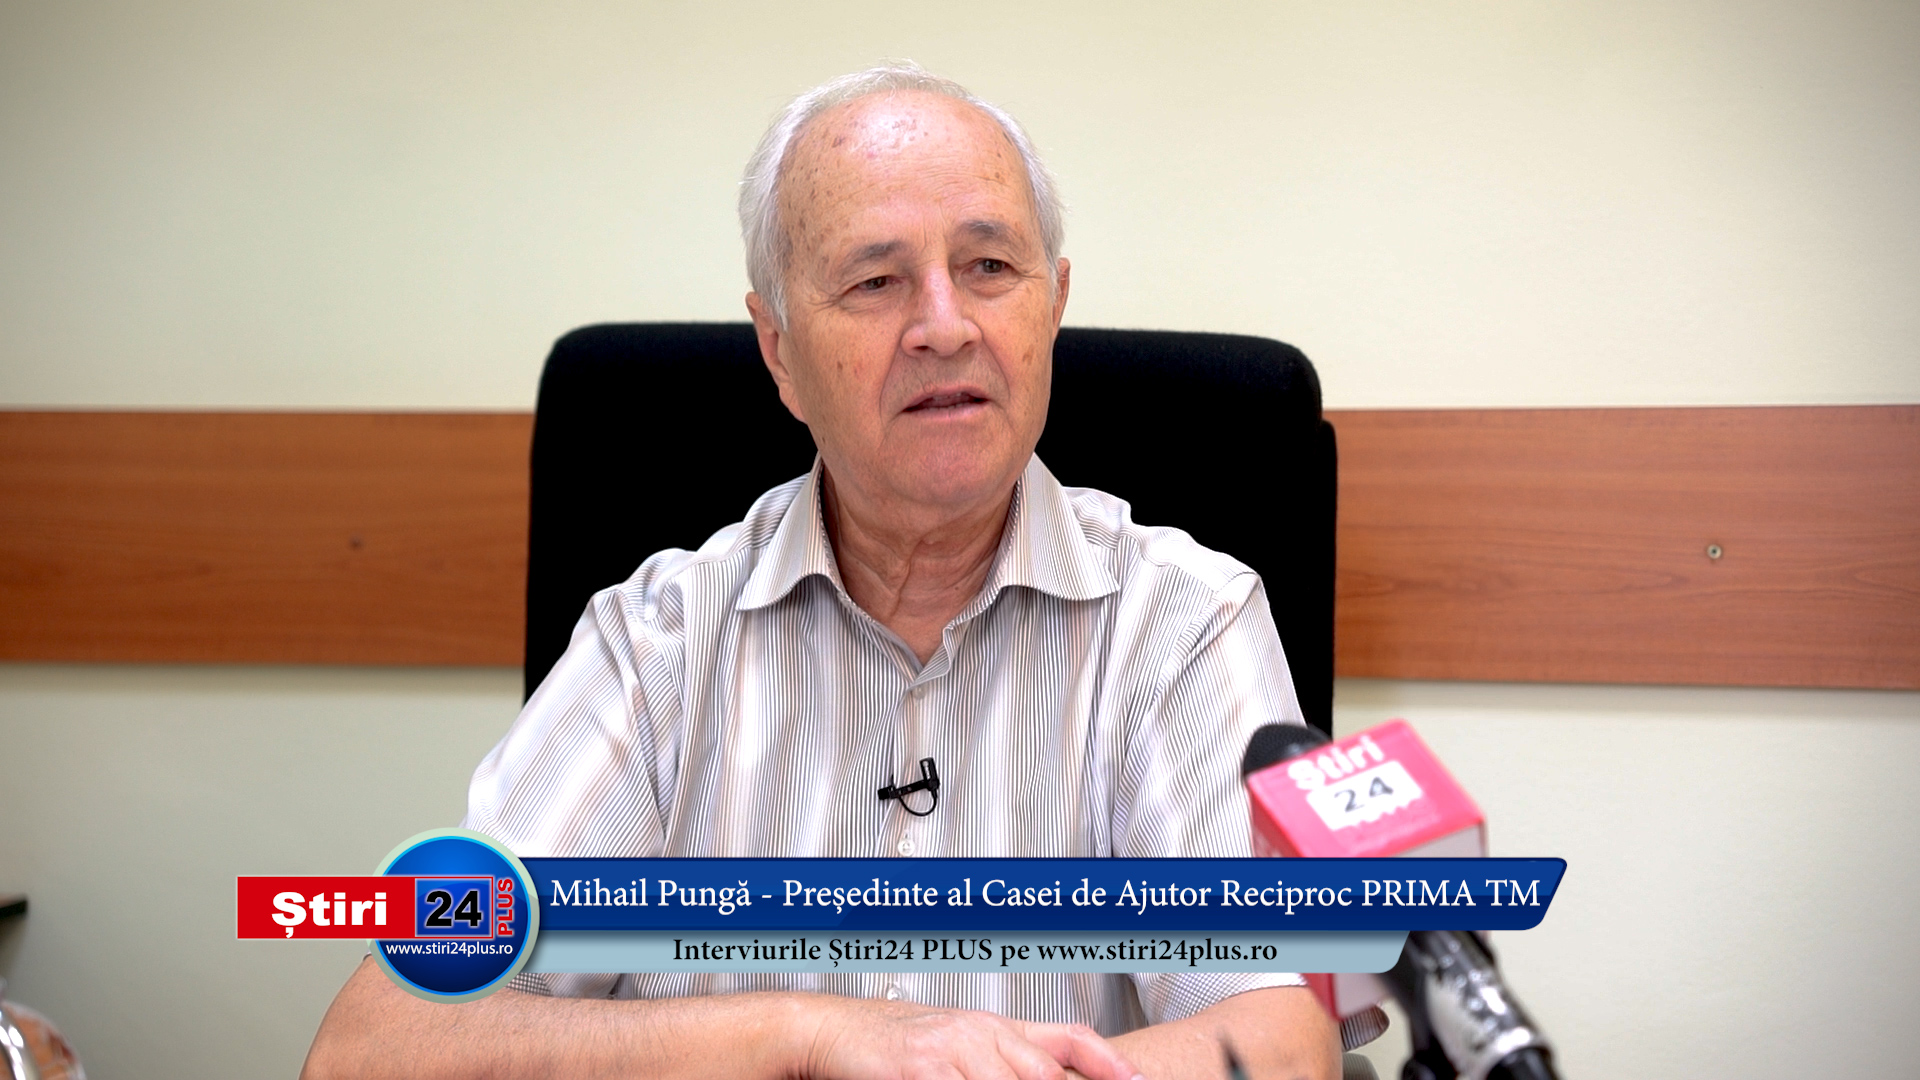 Interviu Știri 24 PLUS cu Mihail Pungă – Președinte al Casei de Ajutor Reciproc PRIMA TM